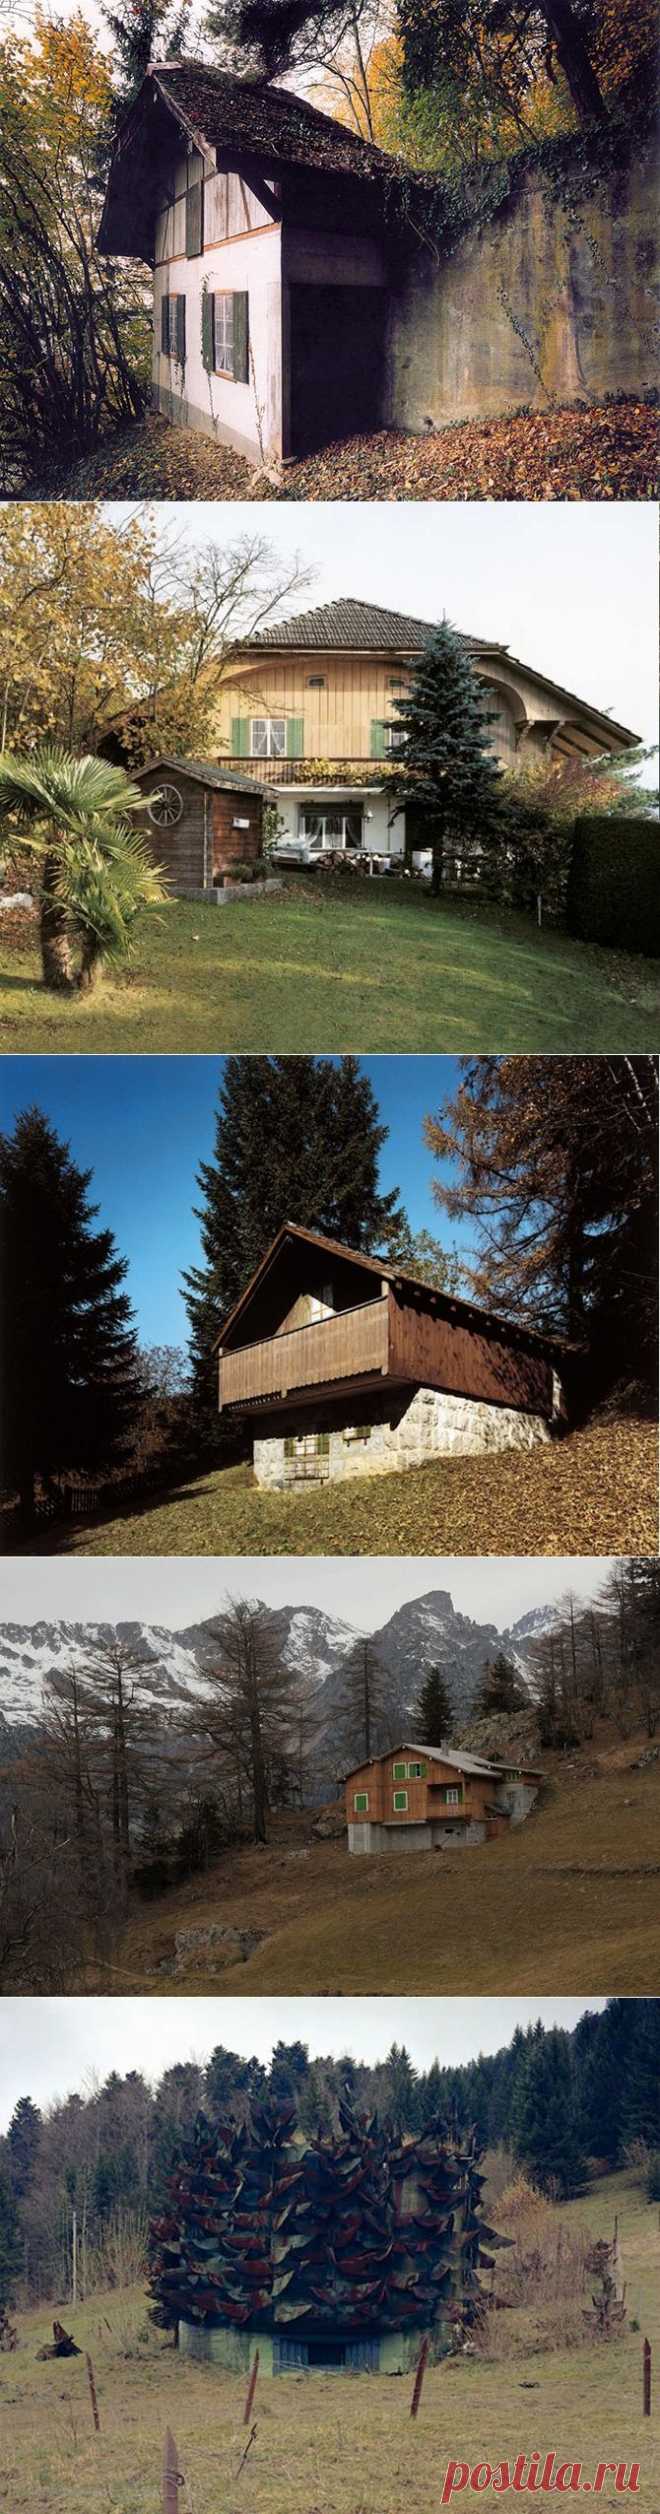 Лже-дома в Швейцарии / Туристический спутник